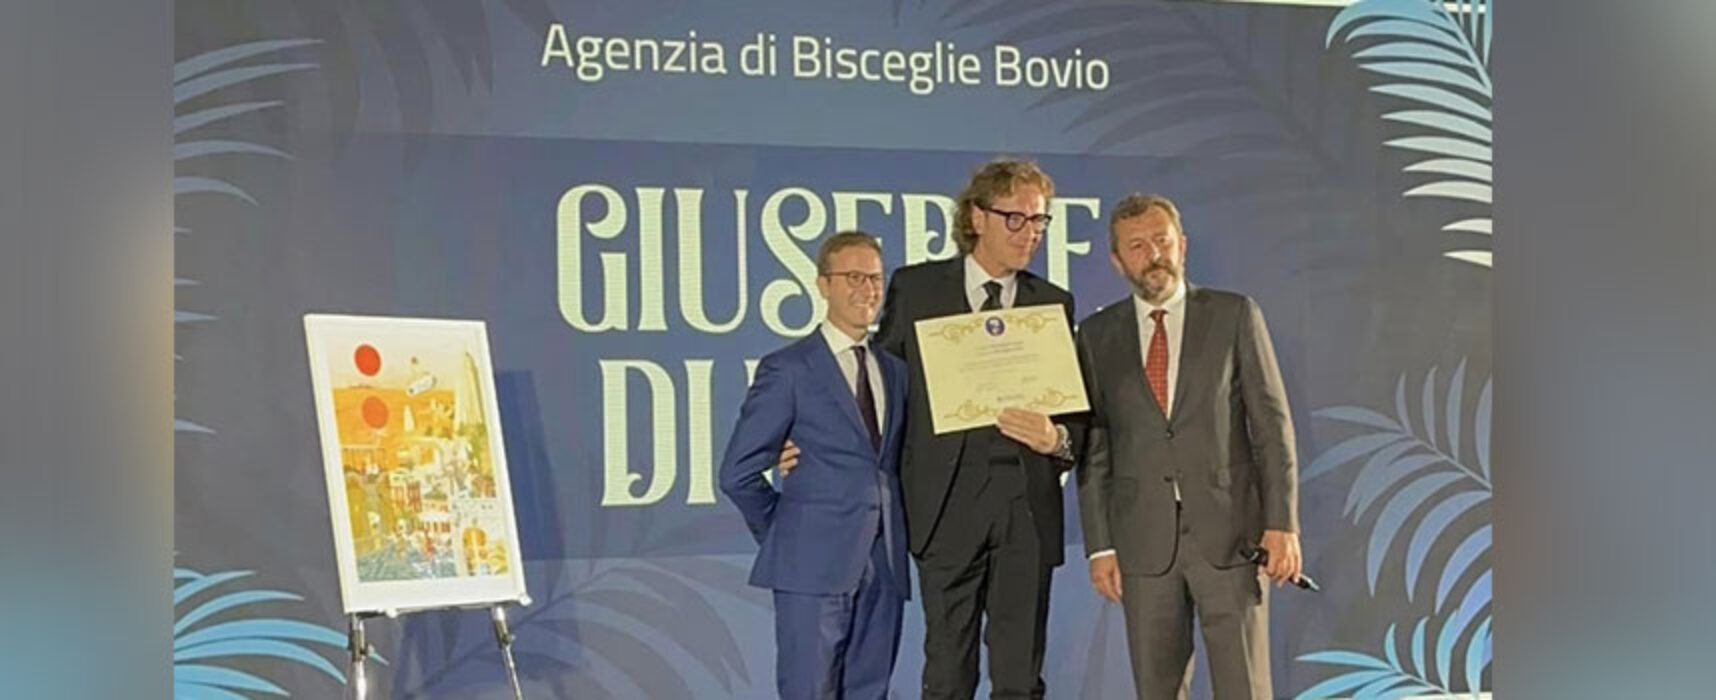 Italiana Assicurazioni Bovio Bisceglie premiata in Brasile tra le migliori realtà internazionali